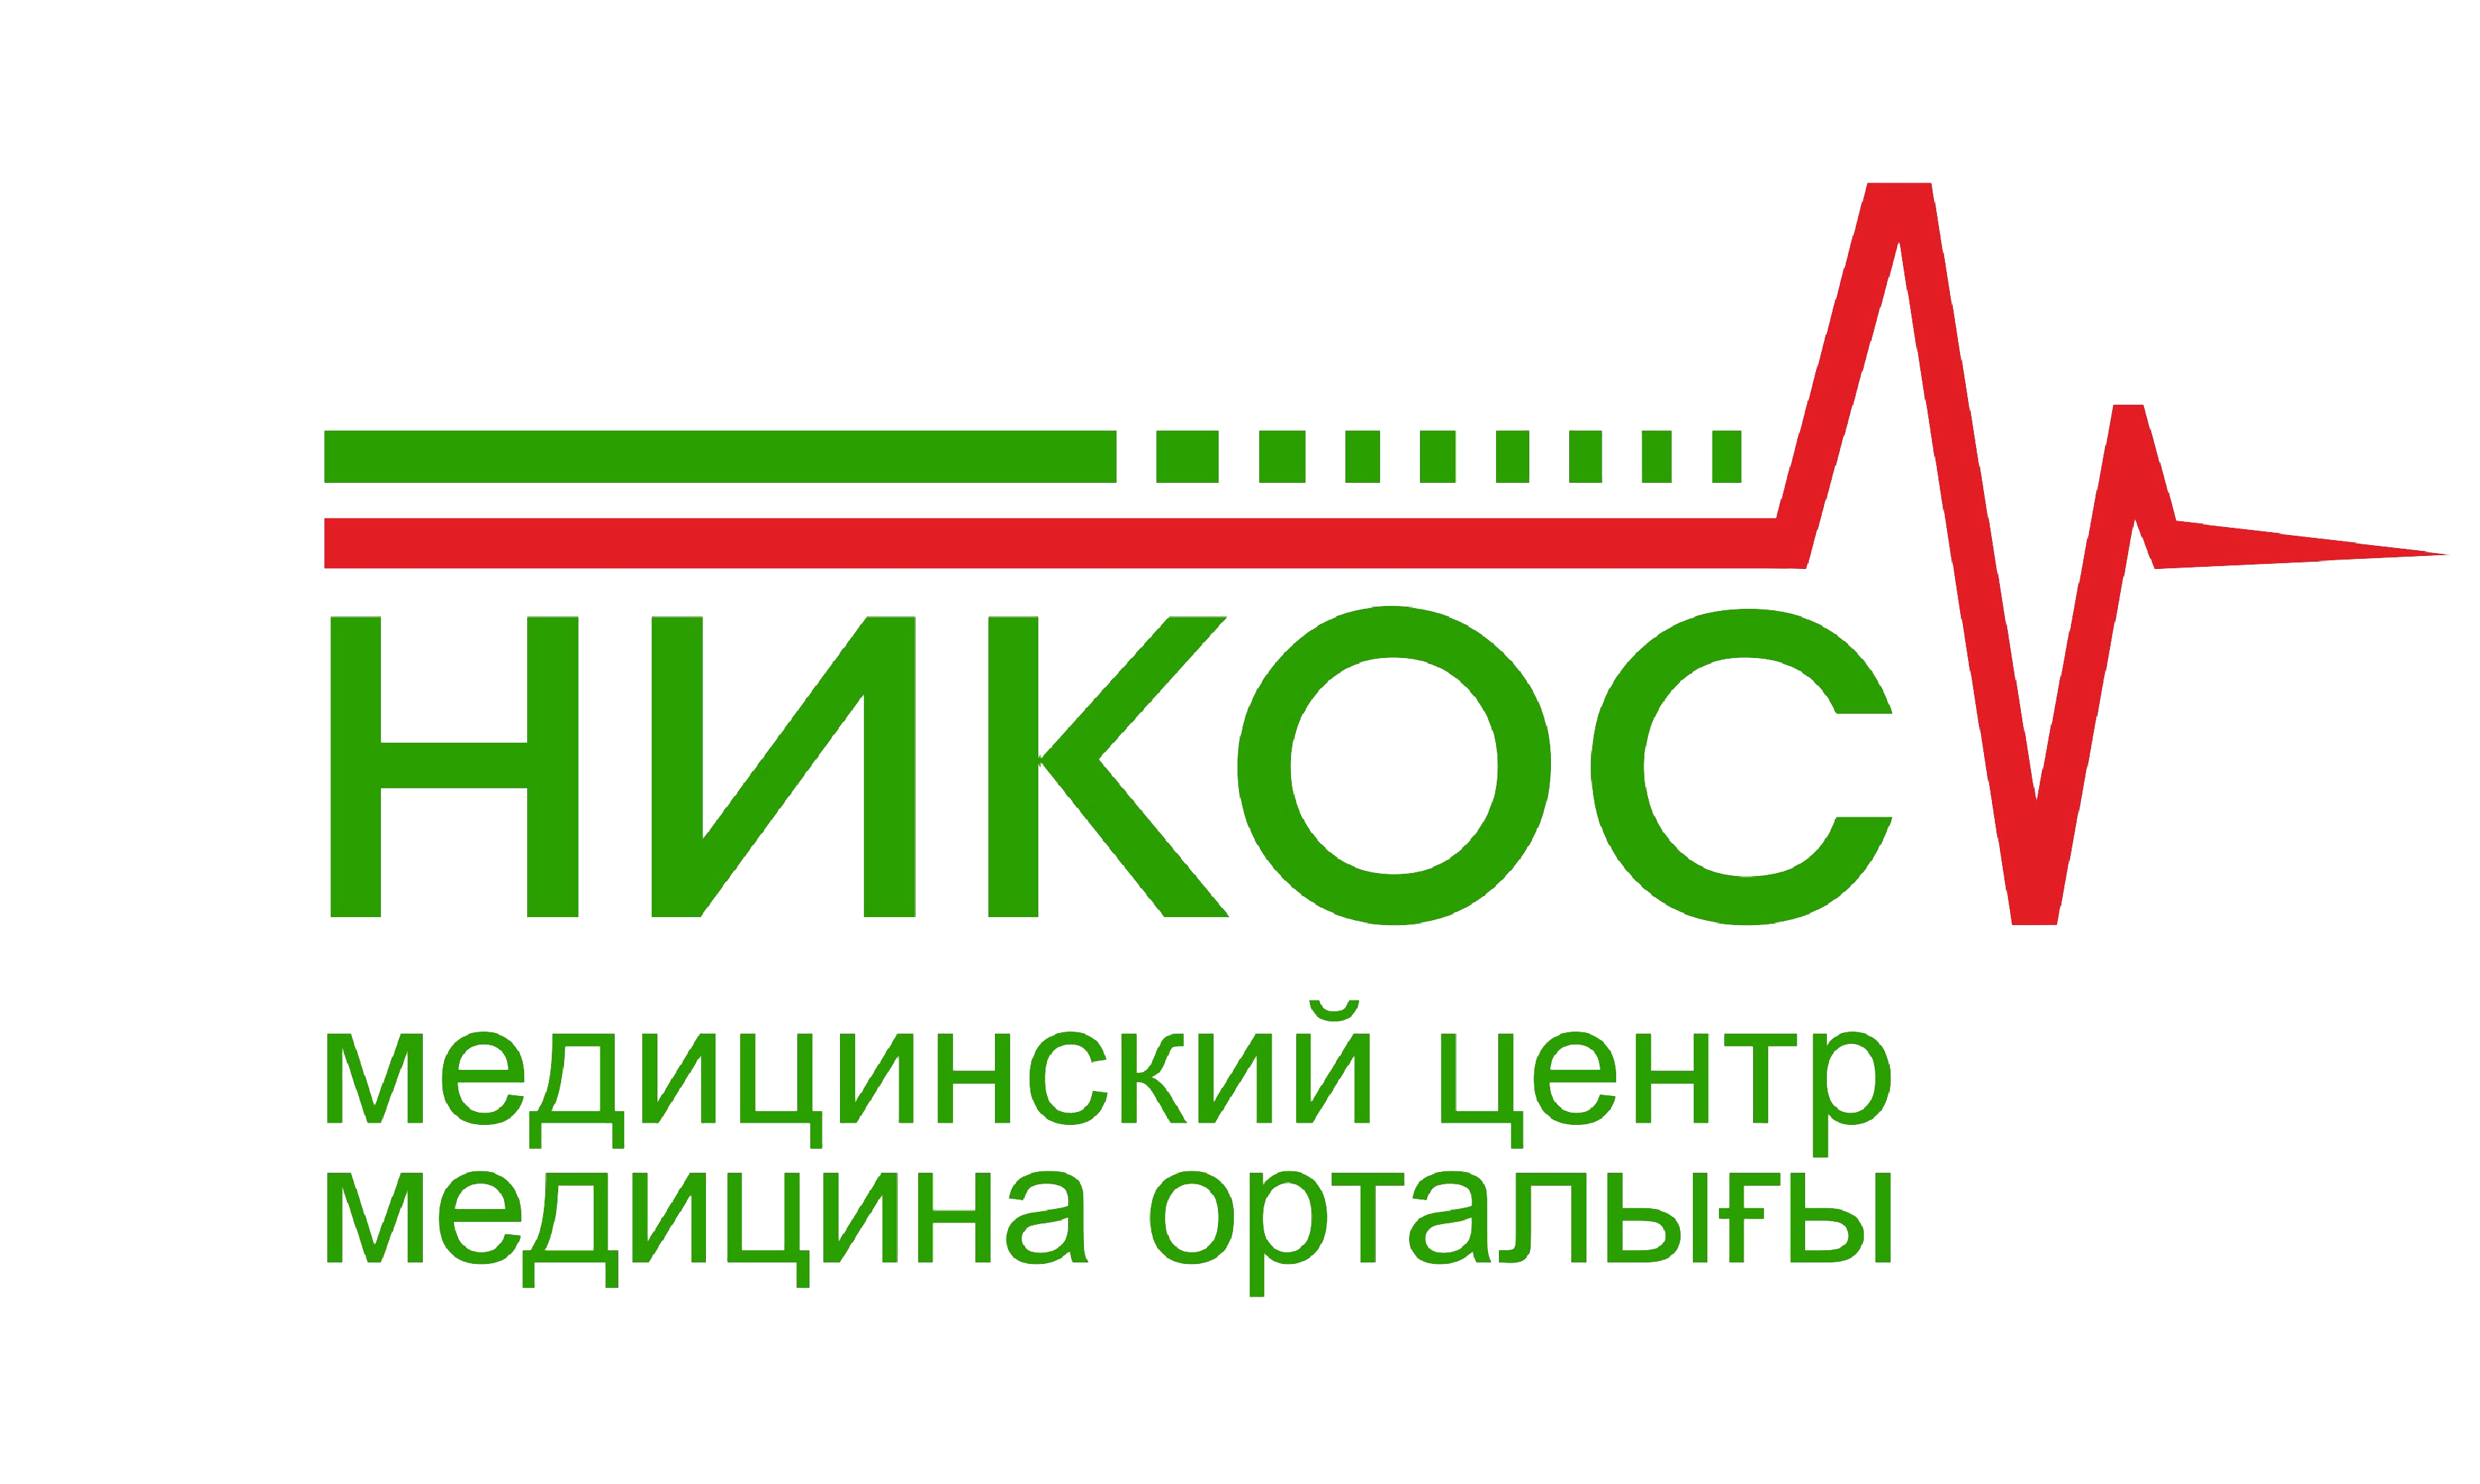 НИКОС - медицинский центр